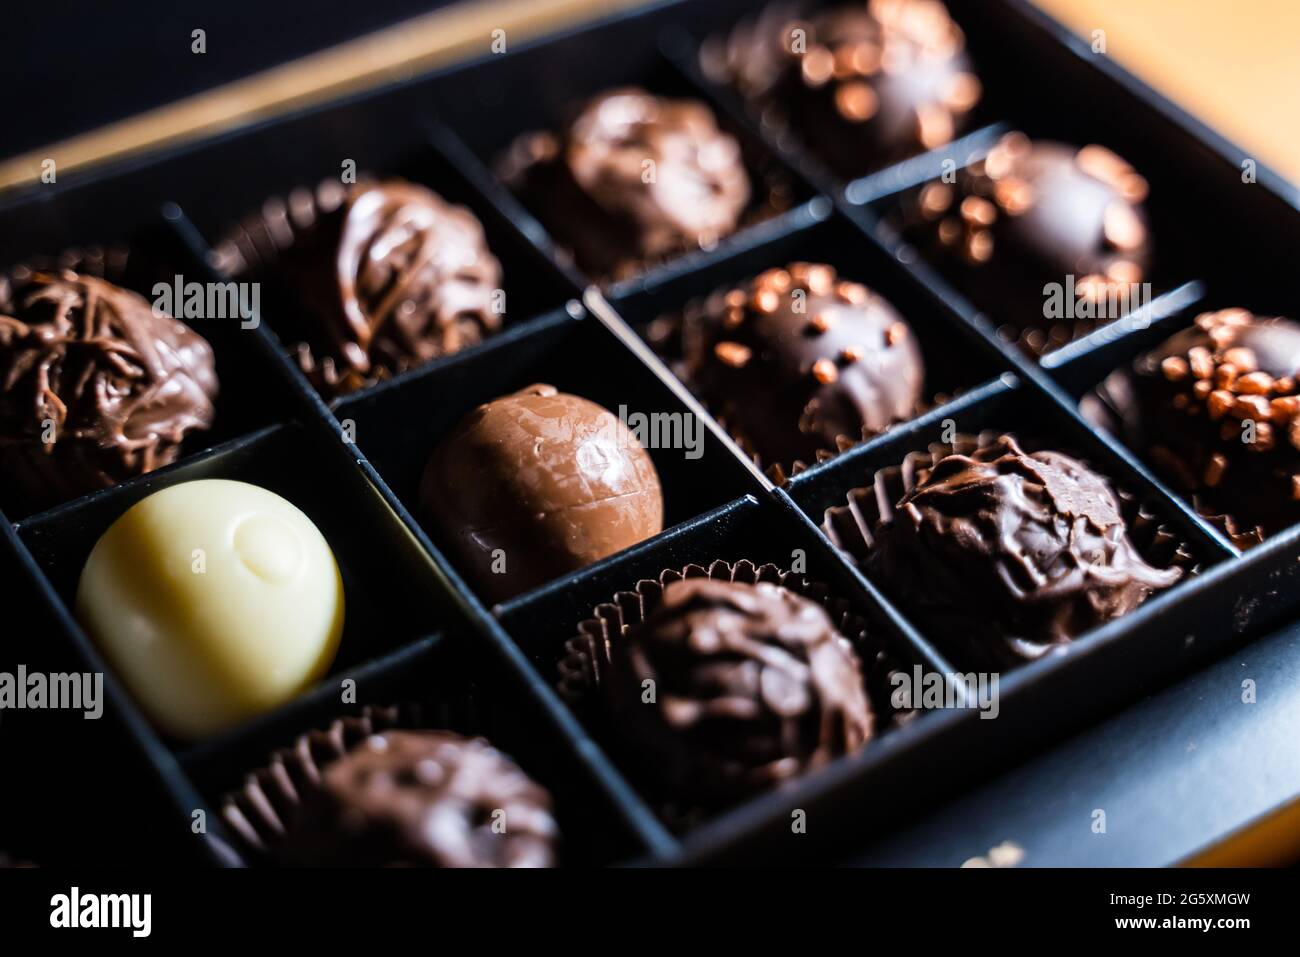 Mehrere Sorten von Schokoladentrüffeln mit schokoladiger und milchiger Glasur und goldenen Streuseln mit Nüssen. Runde Trüffelkugel in einer quadratischen Schachtel schneiden. Stockfoto